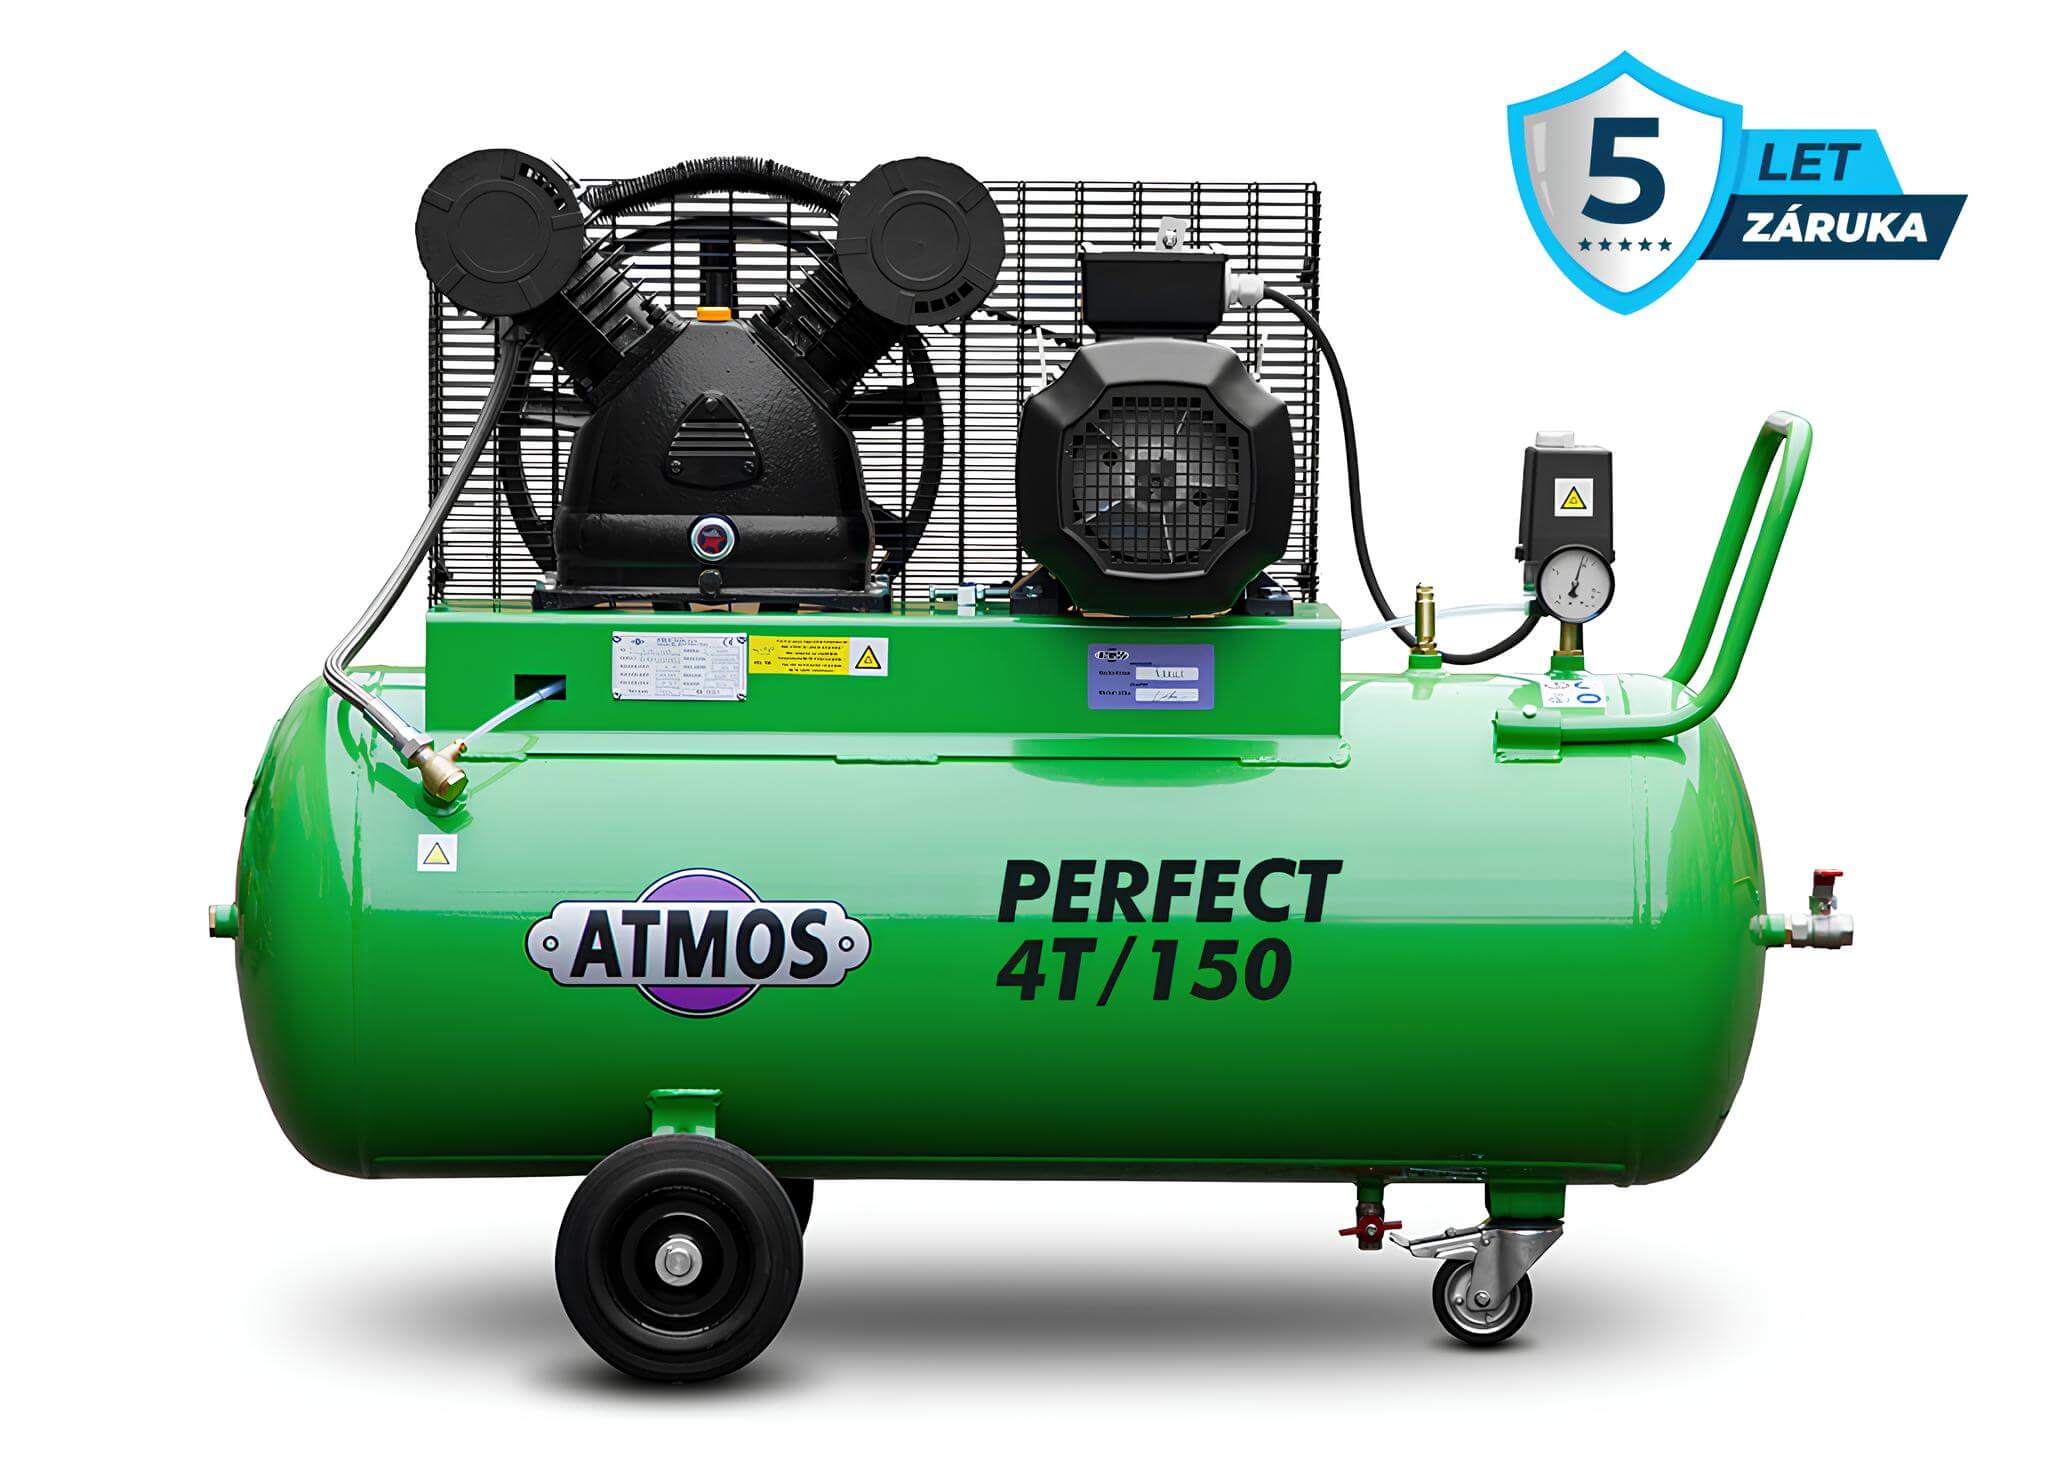 Atmos Pístový kompresor Perfect - 4T/150 příkon 4,0 kW, výkon 500 l/min, tlak 12,5 bar, vzdušník 150 l, napětí 400/50 V/Hz